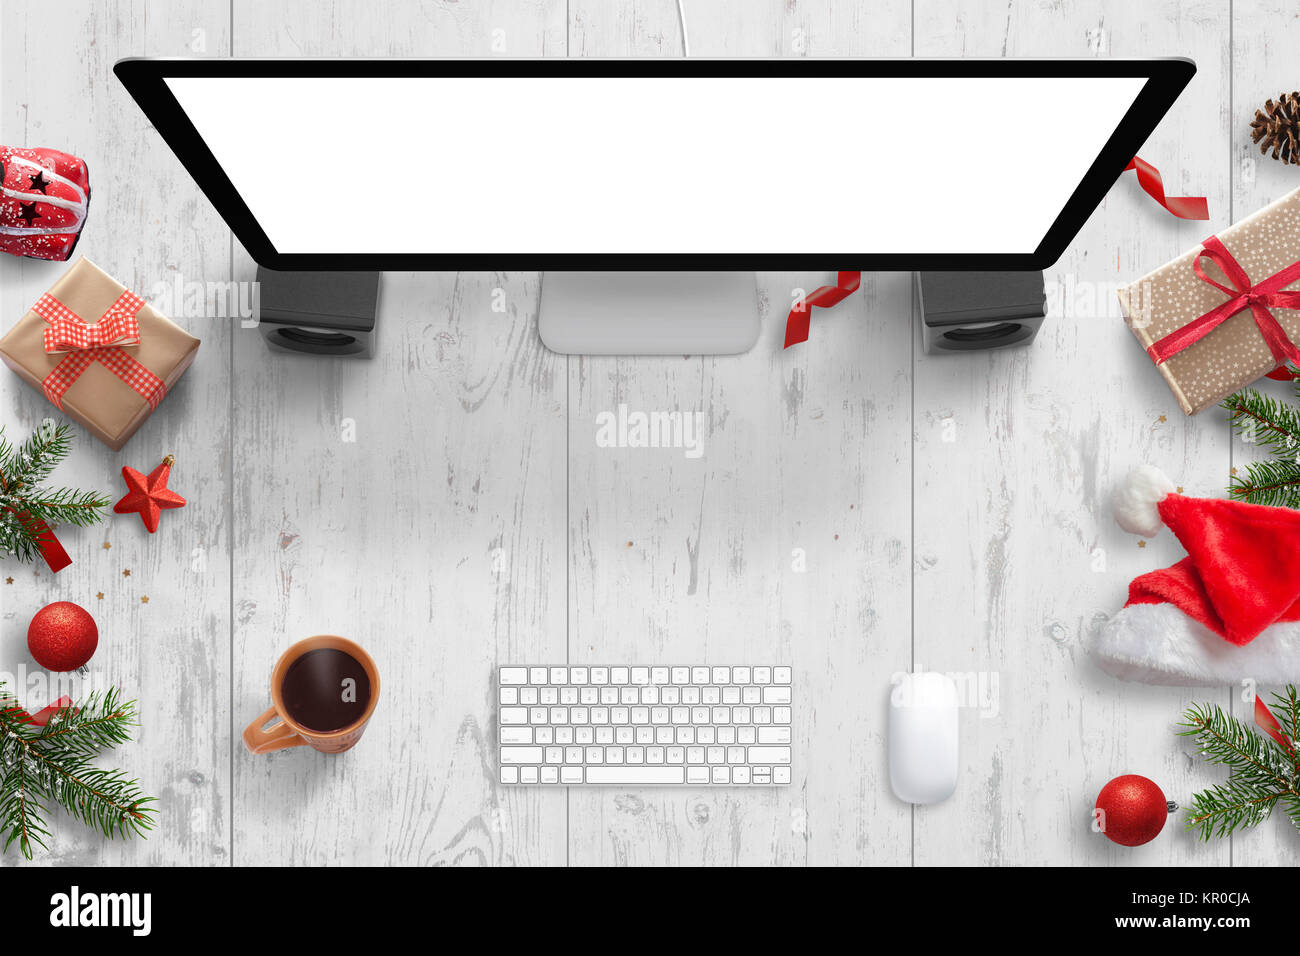 Scène de Noël avec l'écran de l'ordinateur avec écran isolées pour immersive, clavier, souris, thé et décorations de Noël. Banque D'Images